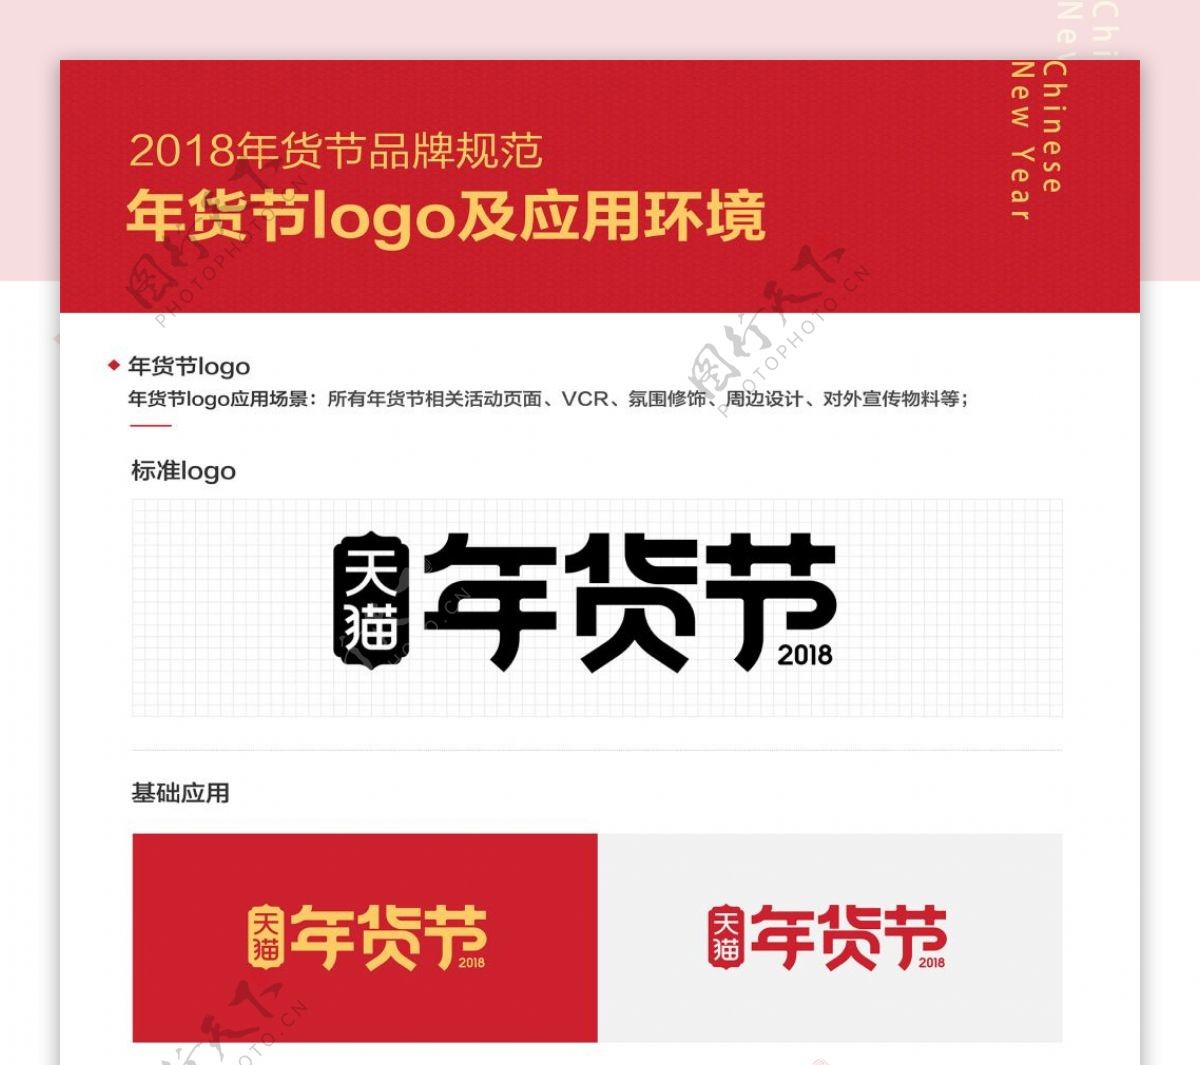 2018天猫年货节logo视觉规范